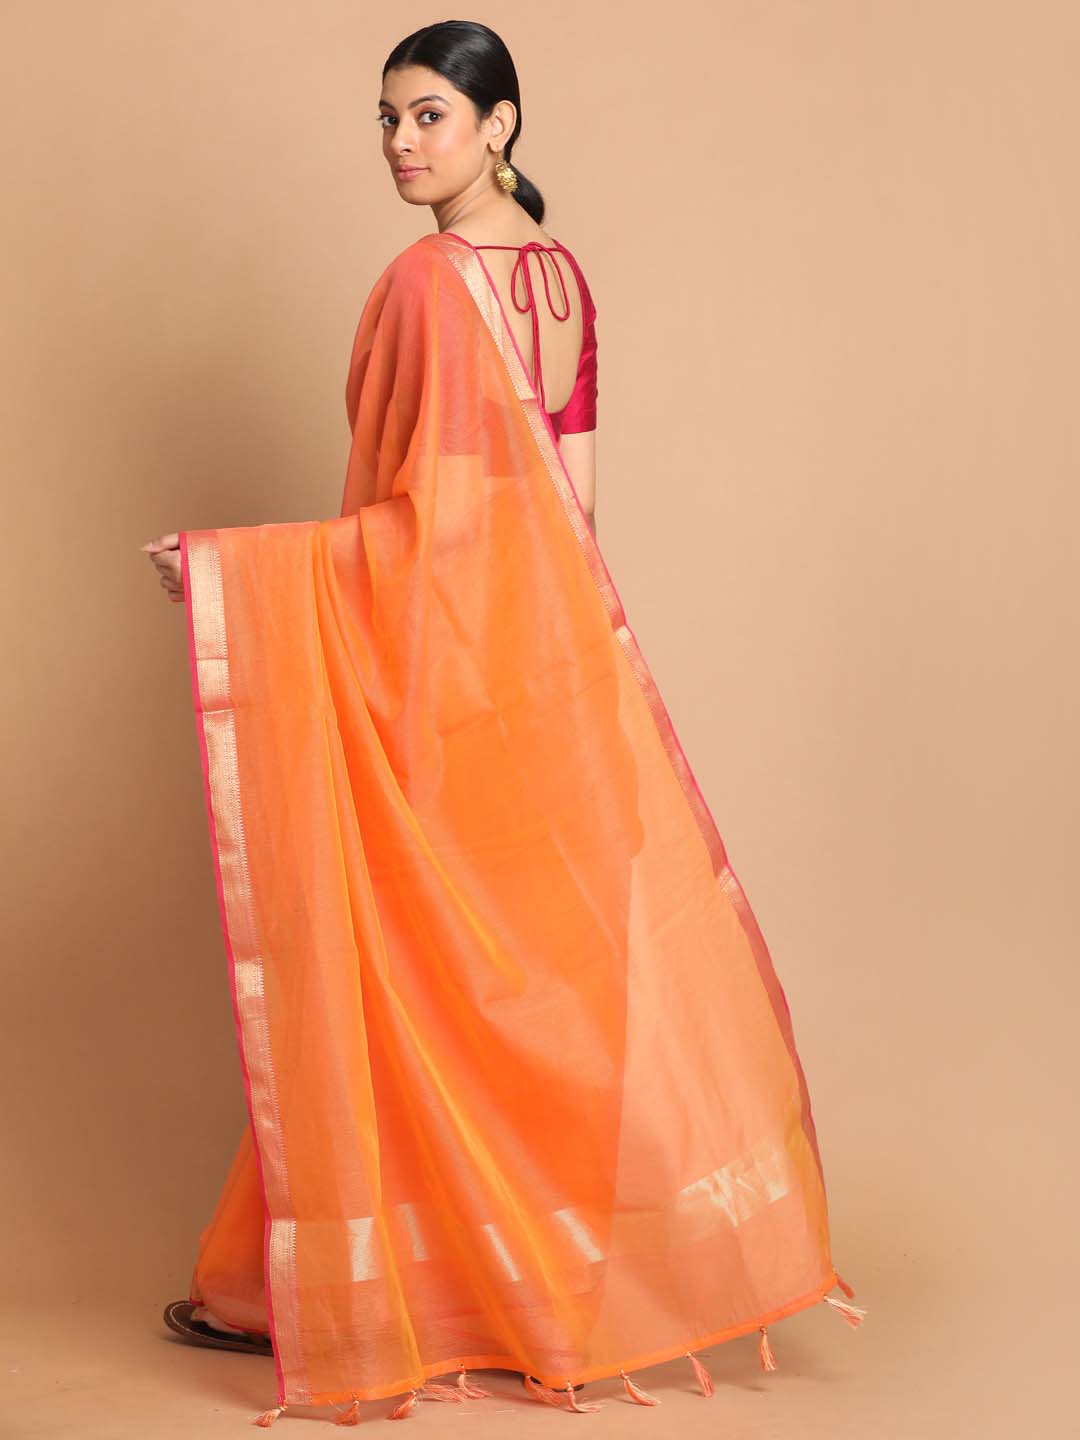 Indethnic Banarasi Orange Solid Daily Wear Saree - View 3